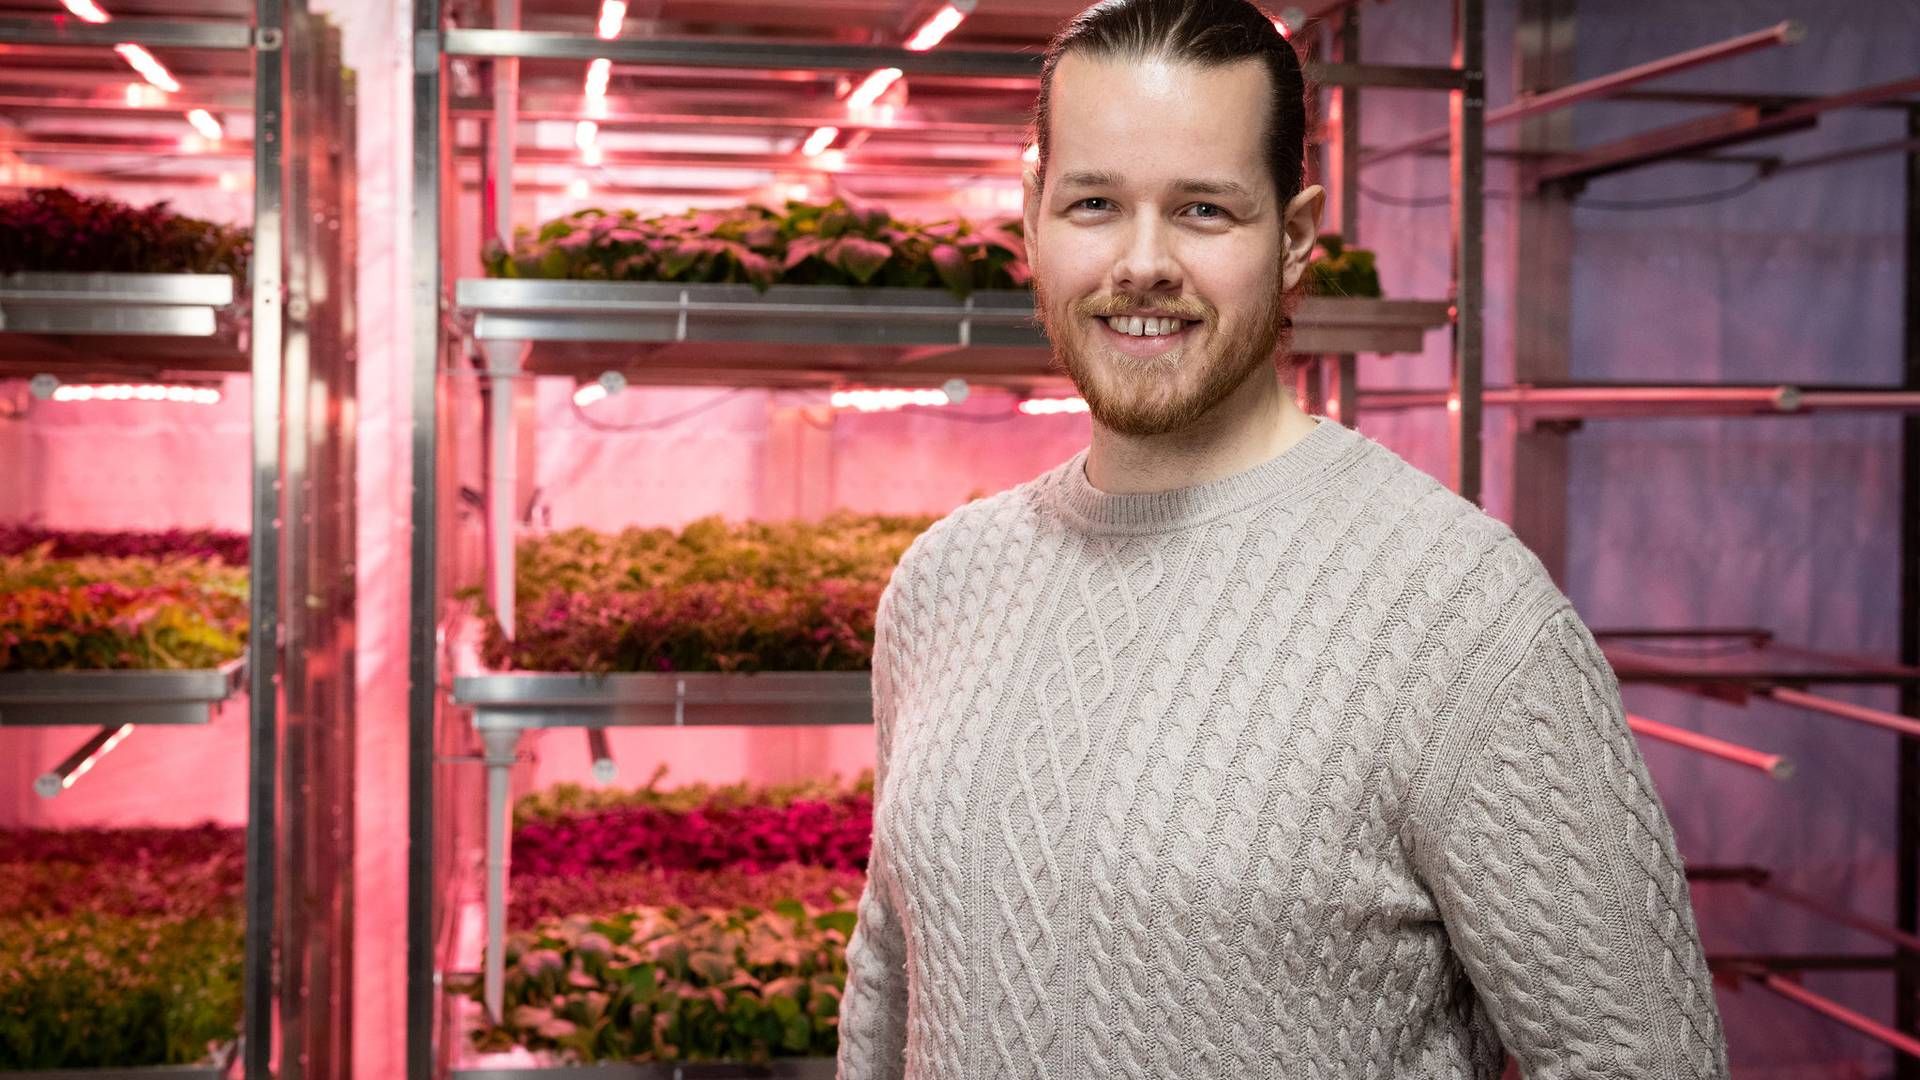 INTERNASJONALT: Martin Molenaar, daglig leder og gründer av teknologiselskapet Avisomo, sier samarbeidet med Coop Norge er første steg for å gå internasjonalt med sin automasjonsteknologi for dyrking av mat. | Foto: Espen Solli